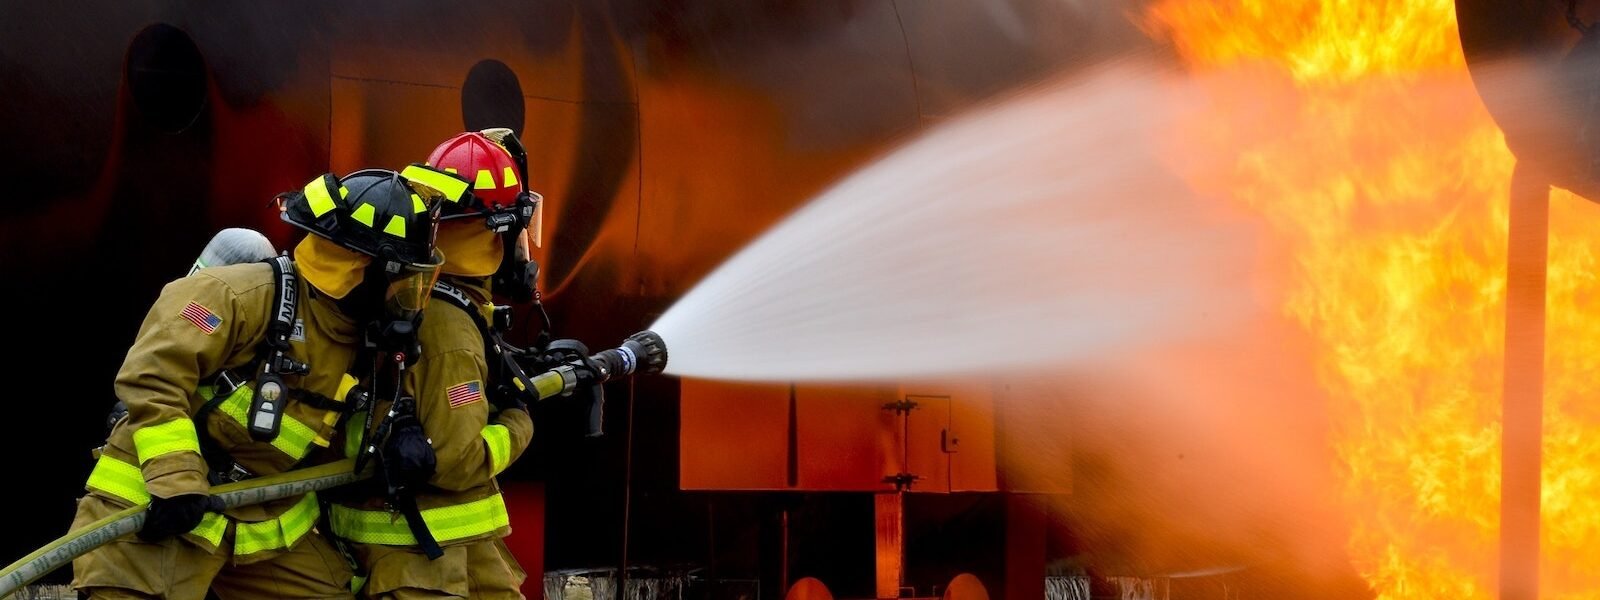 Firemen Blowing Water on Fire